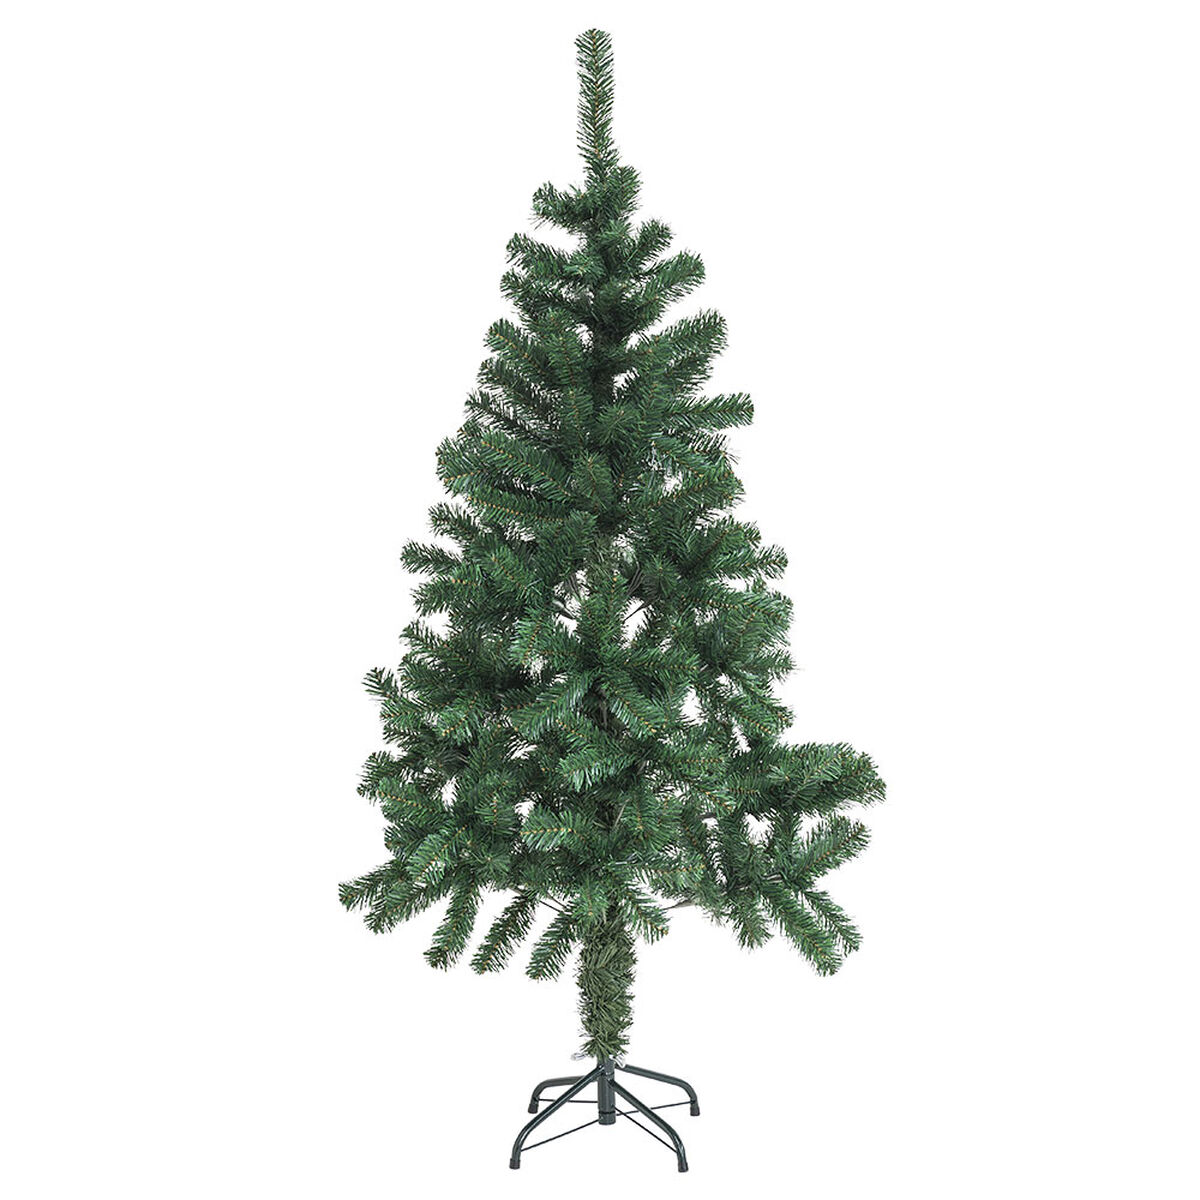 Árbol de Navidad 150 cm